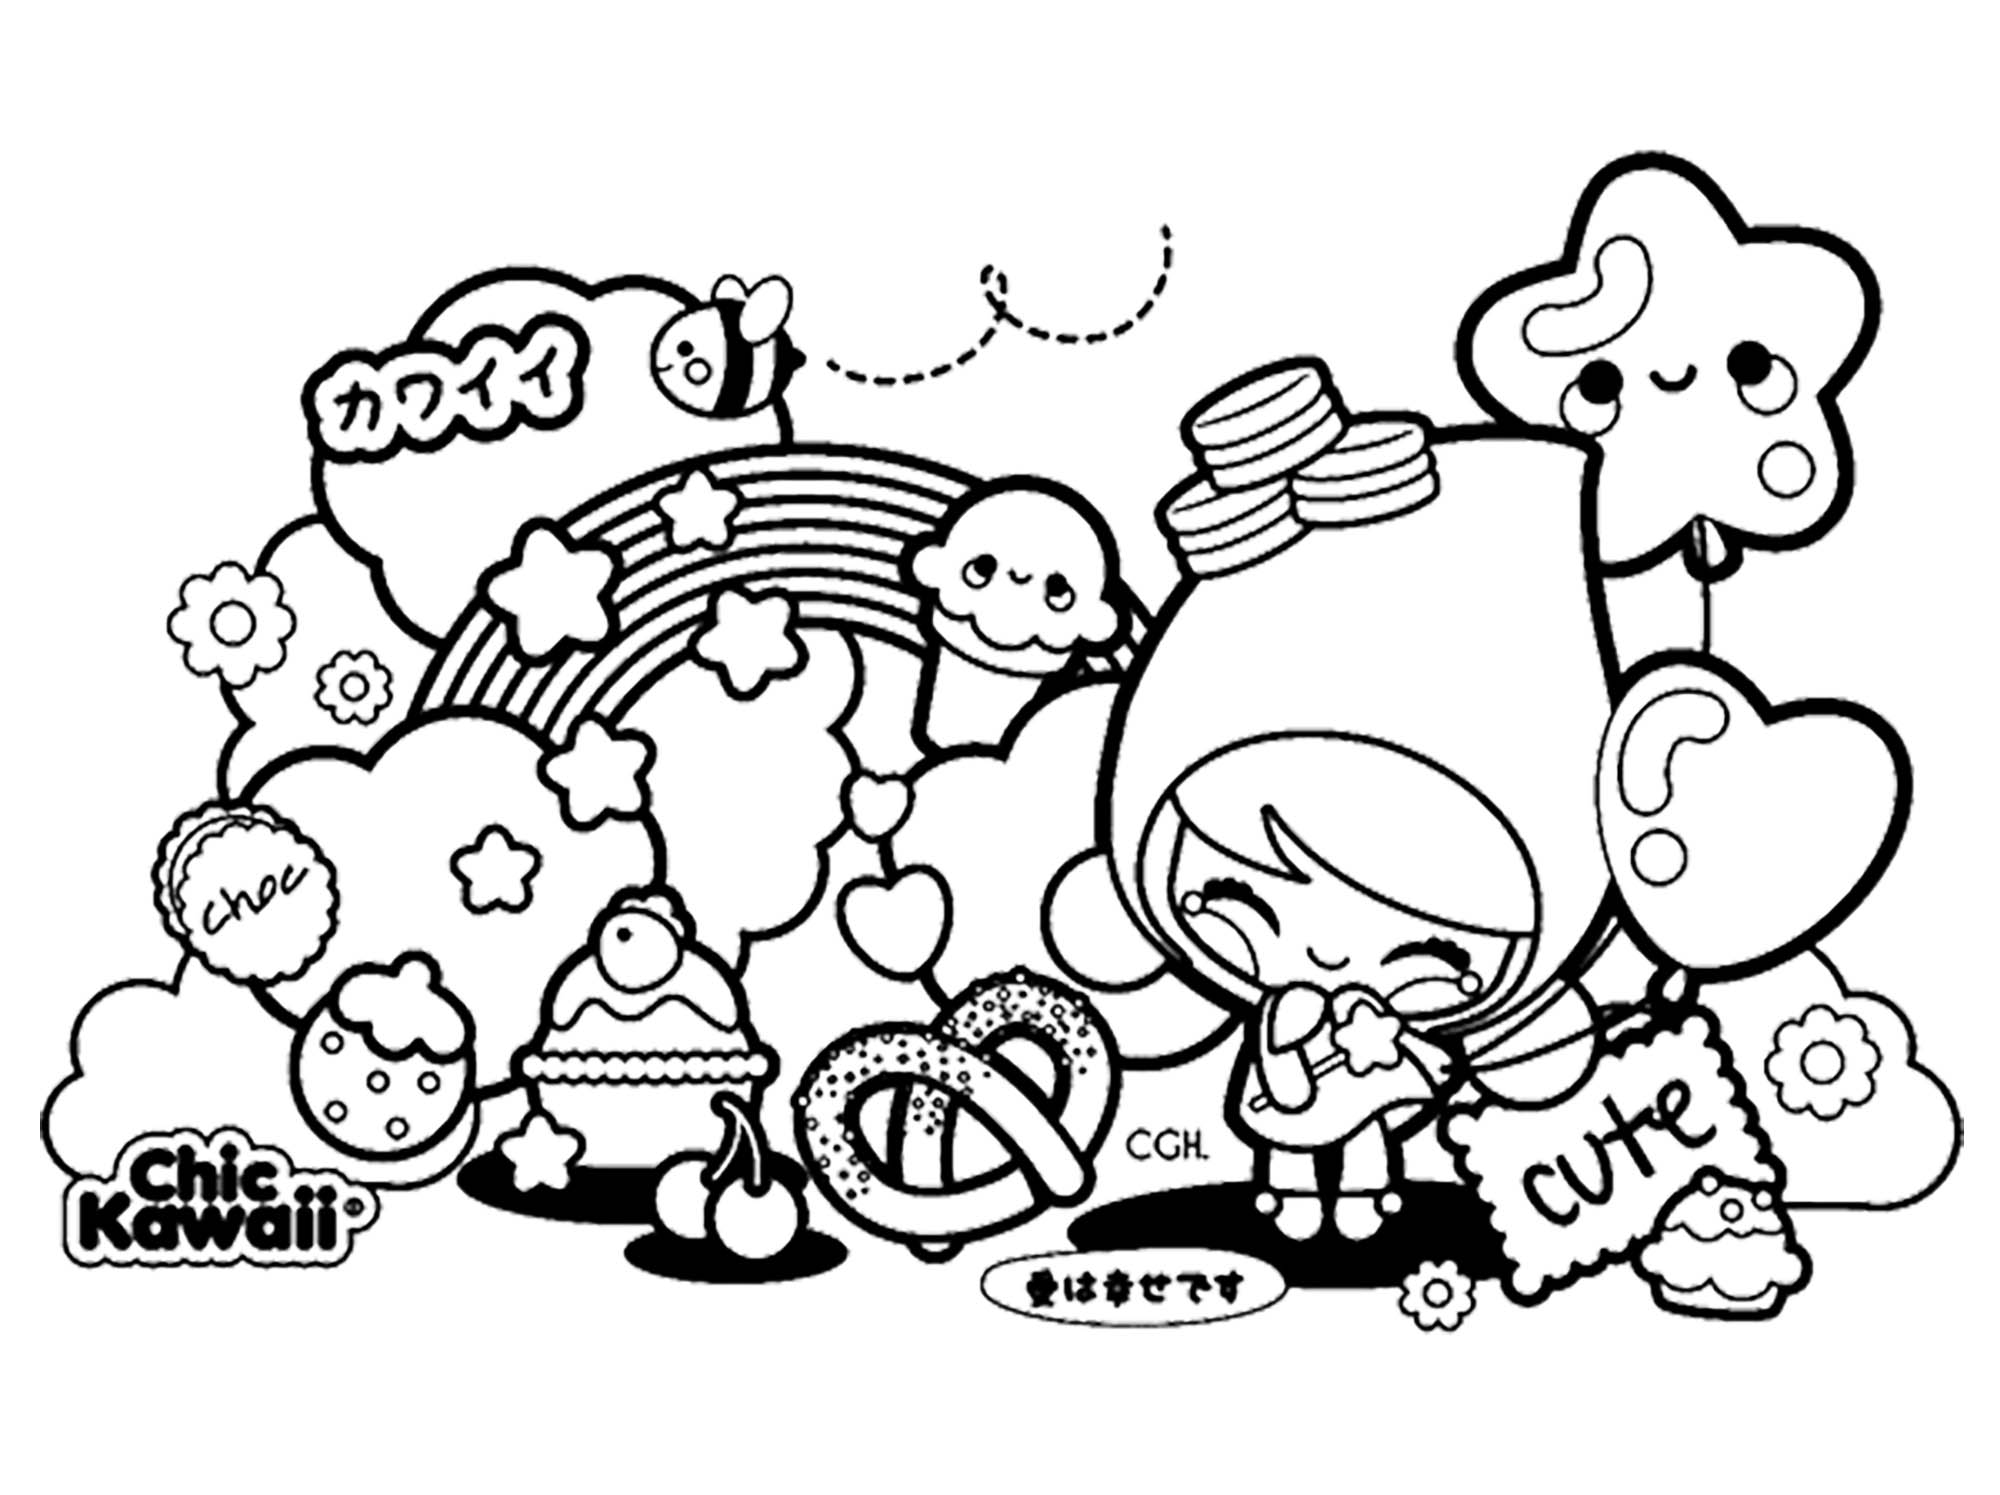 Dibujos para colorear para niños gratis de Kawaii - Kawaii - Just Color  Niños : Dibujos para colorear para niños